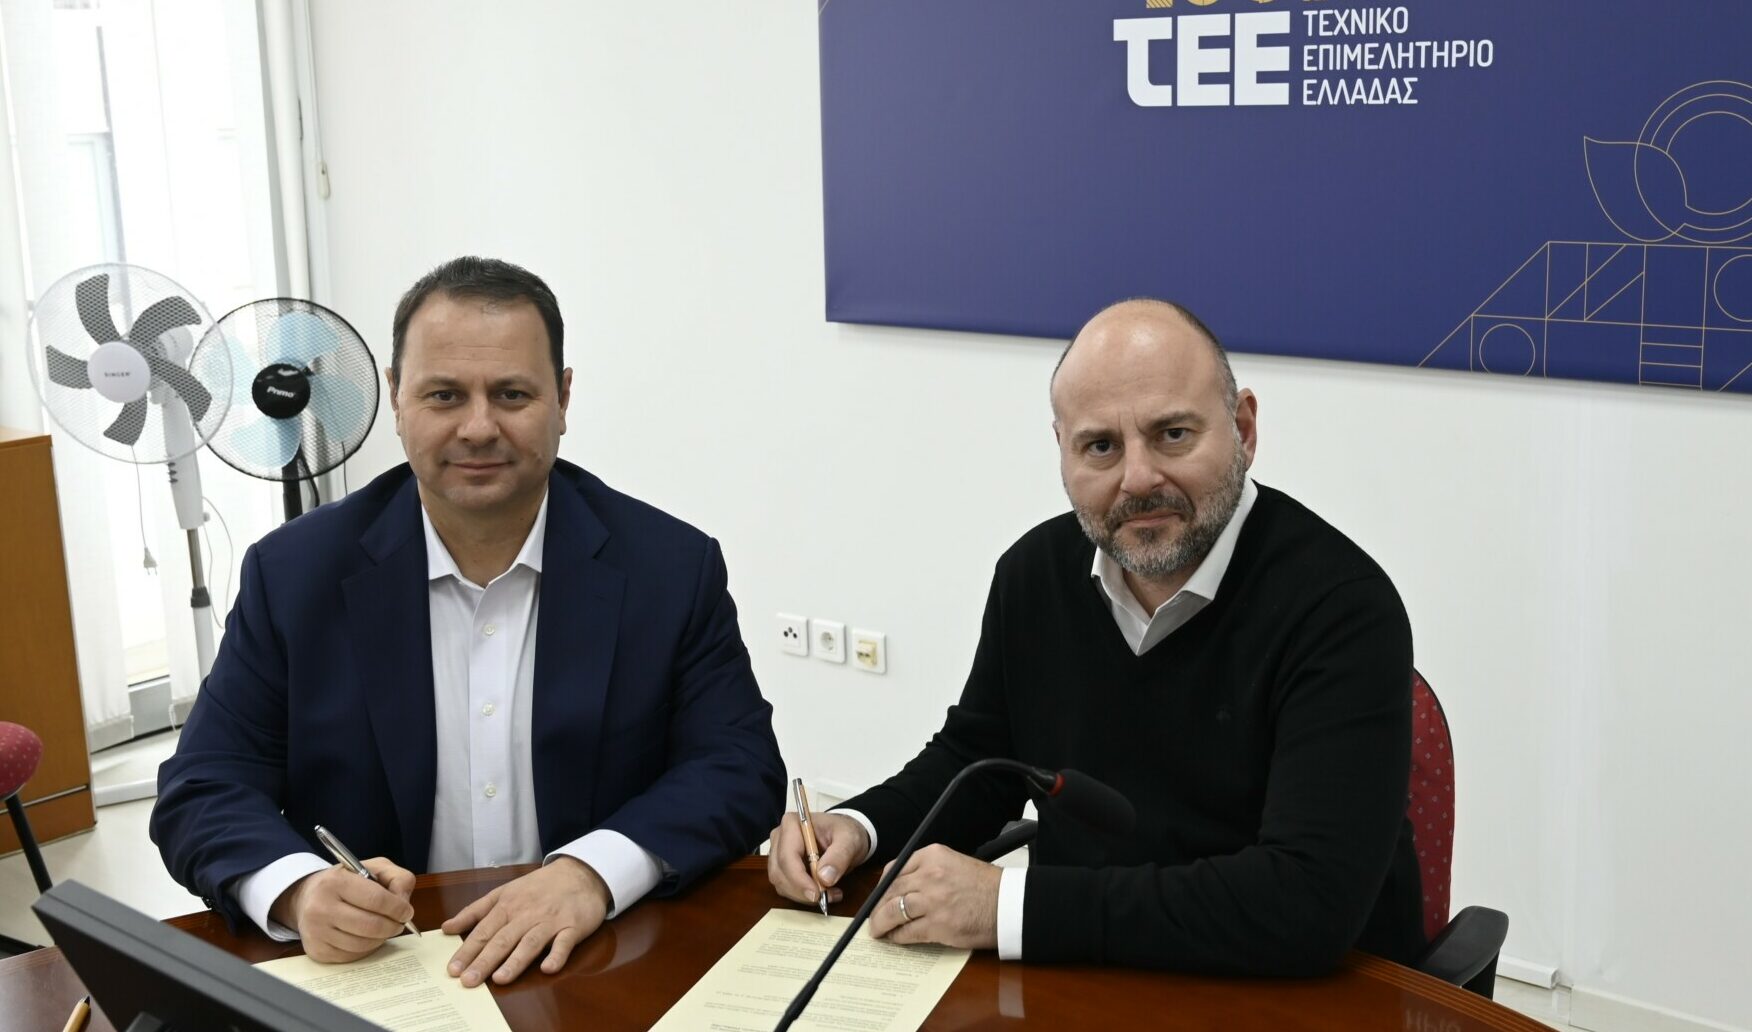 Ο Παναγιώτης Σταμπουλίδης του ΤΑΙΠΕΔ και ο Πρόεδρος του ΤΕΕ, Γιώργος Στασινός υπογράφουν το ΜοU για το ΟΑΚΑ © ΤΑΙΠΕΔ